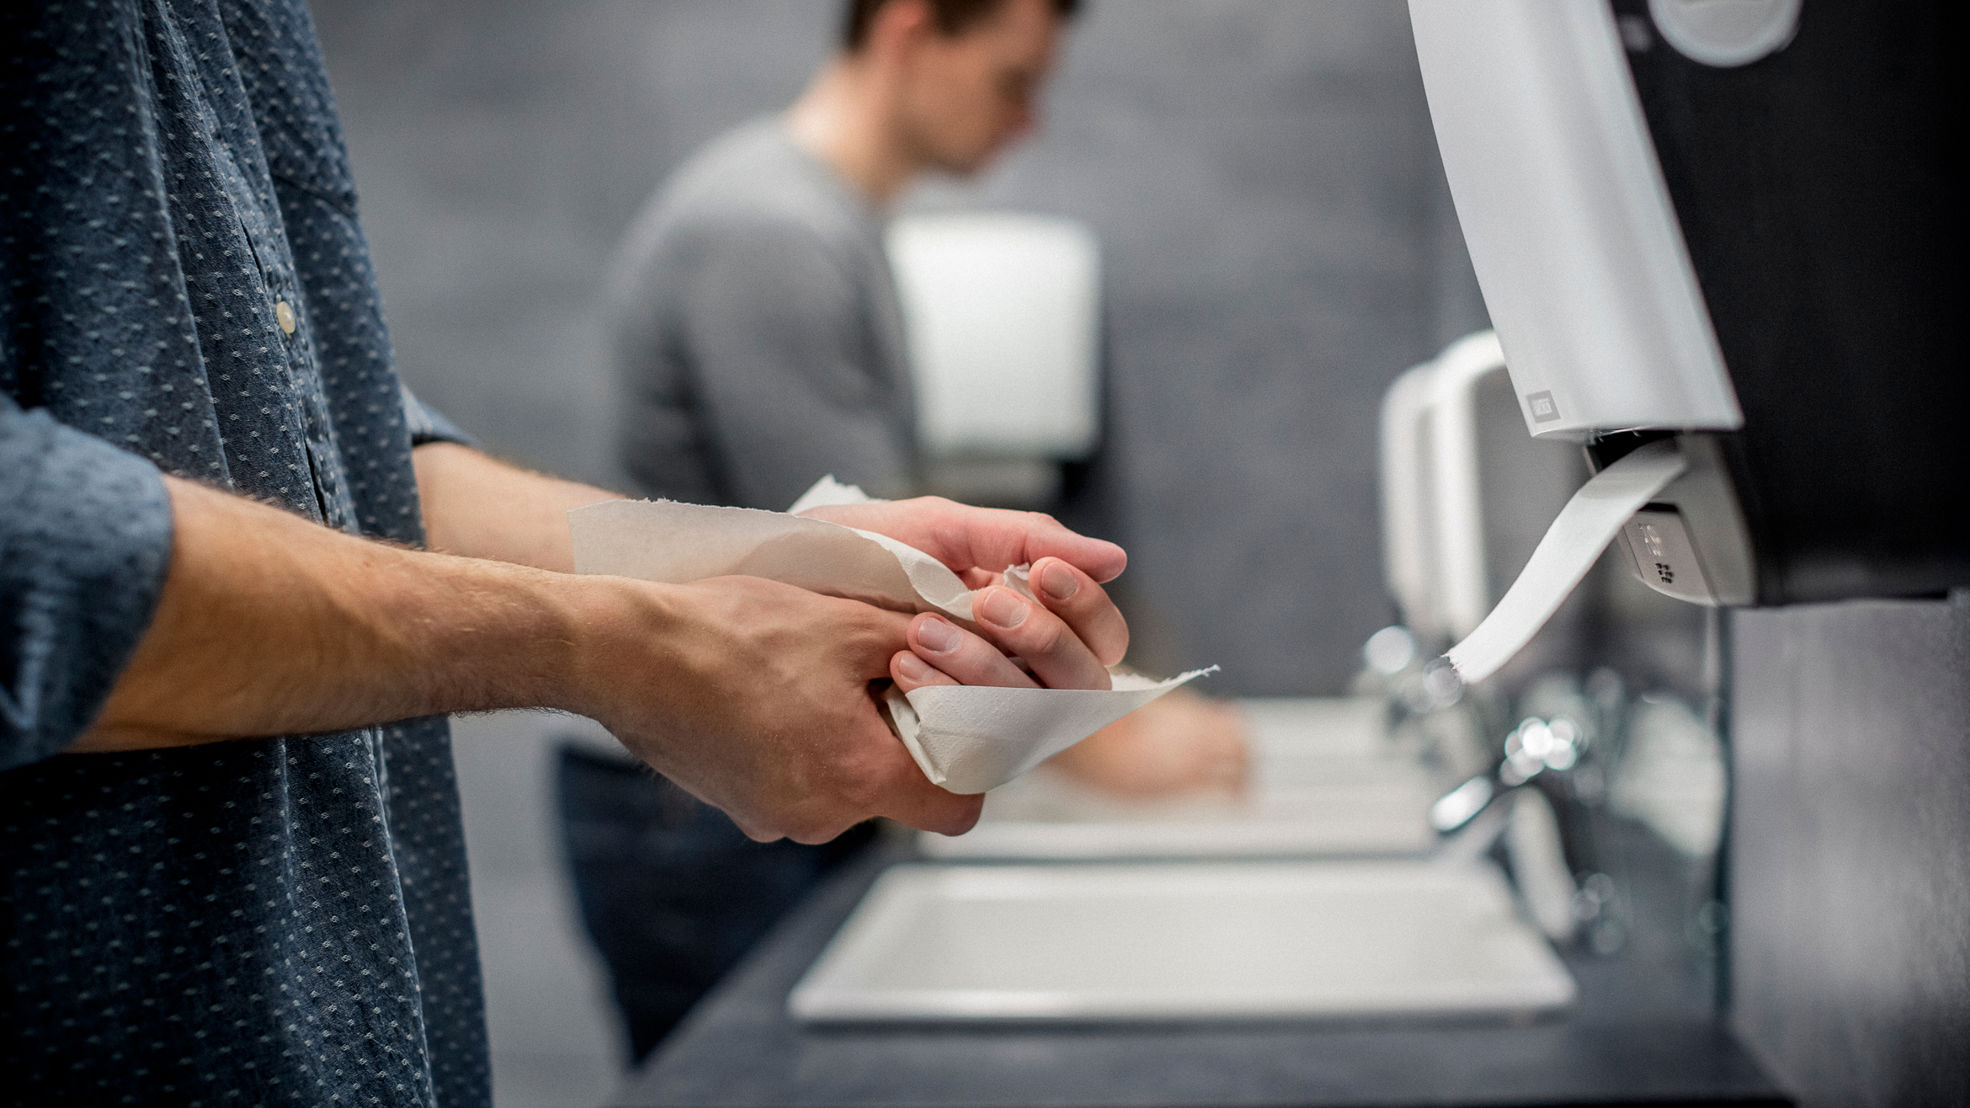 käsiä kuivattava henkilö julkisessa wc:ssä